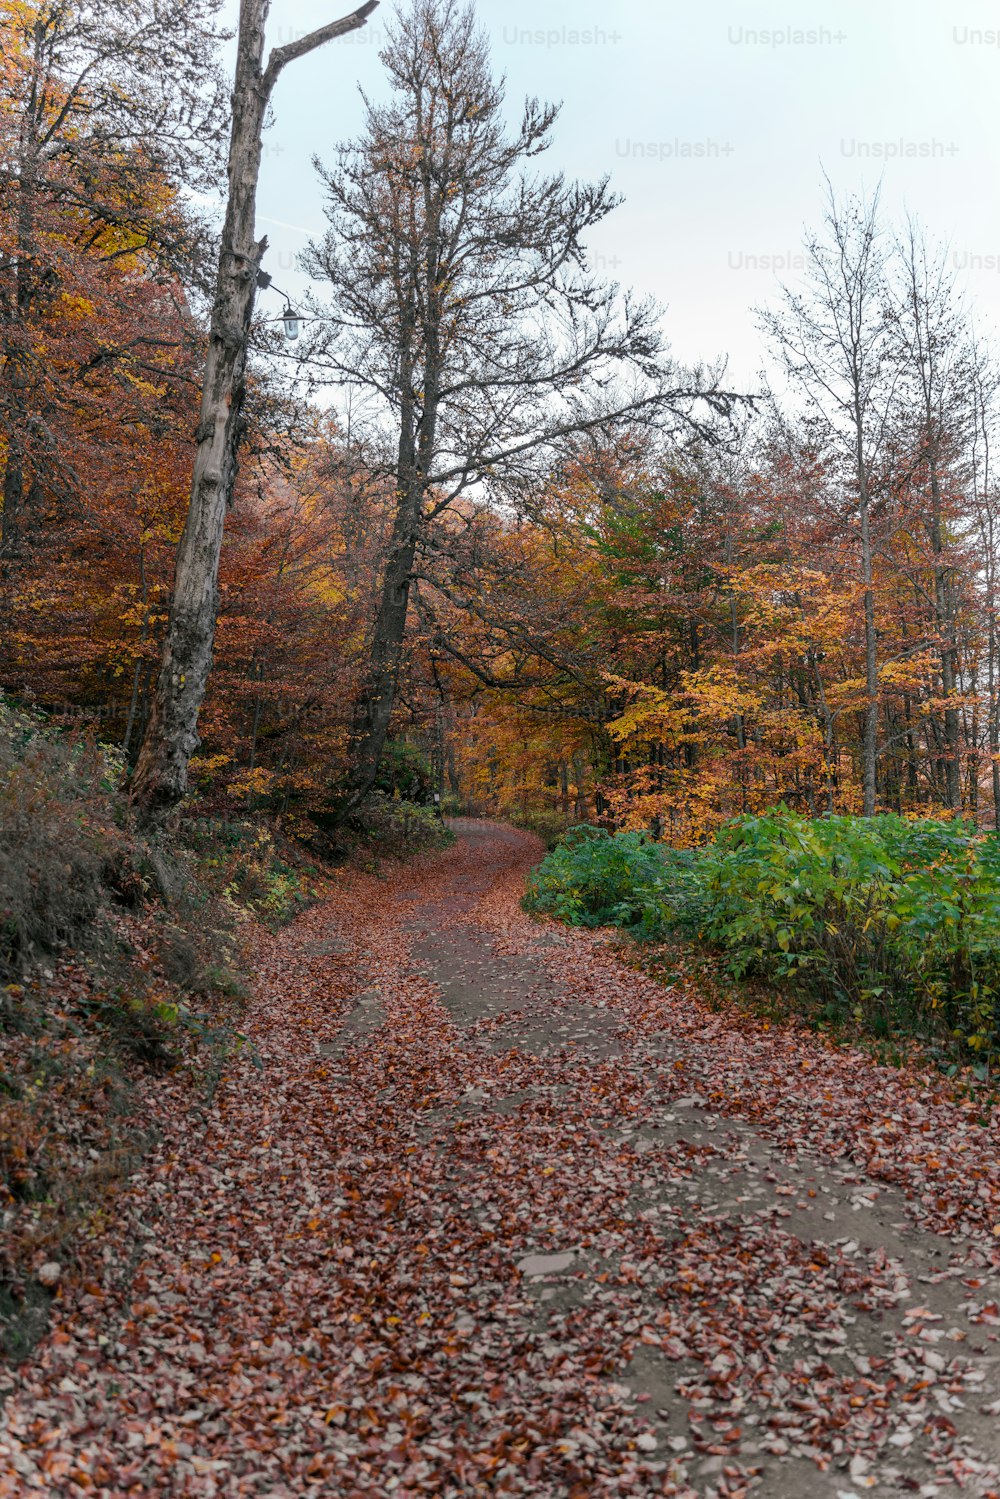 Eine unbefestigte Straße, umgeben von Bäumen und Blättern